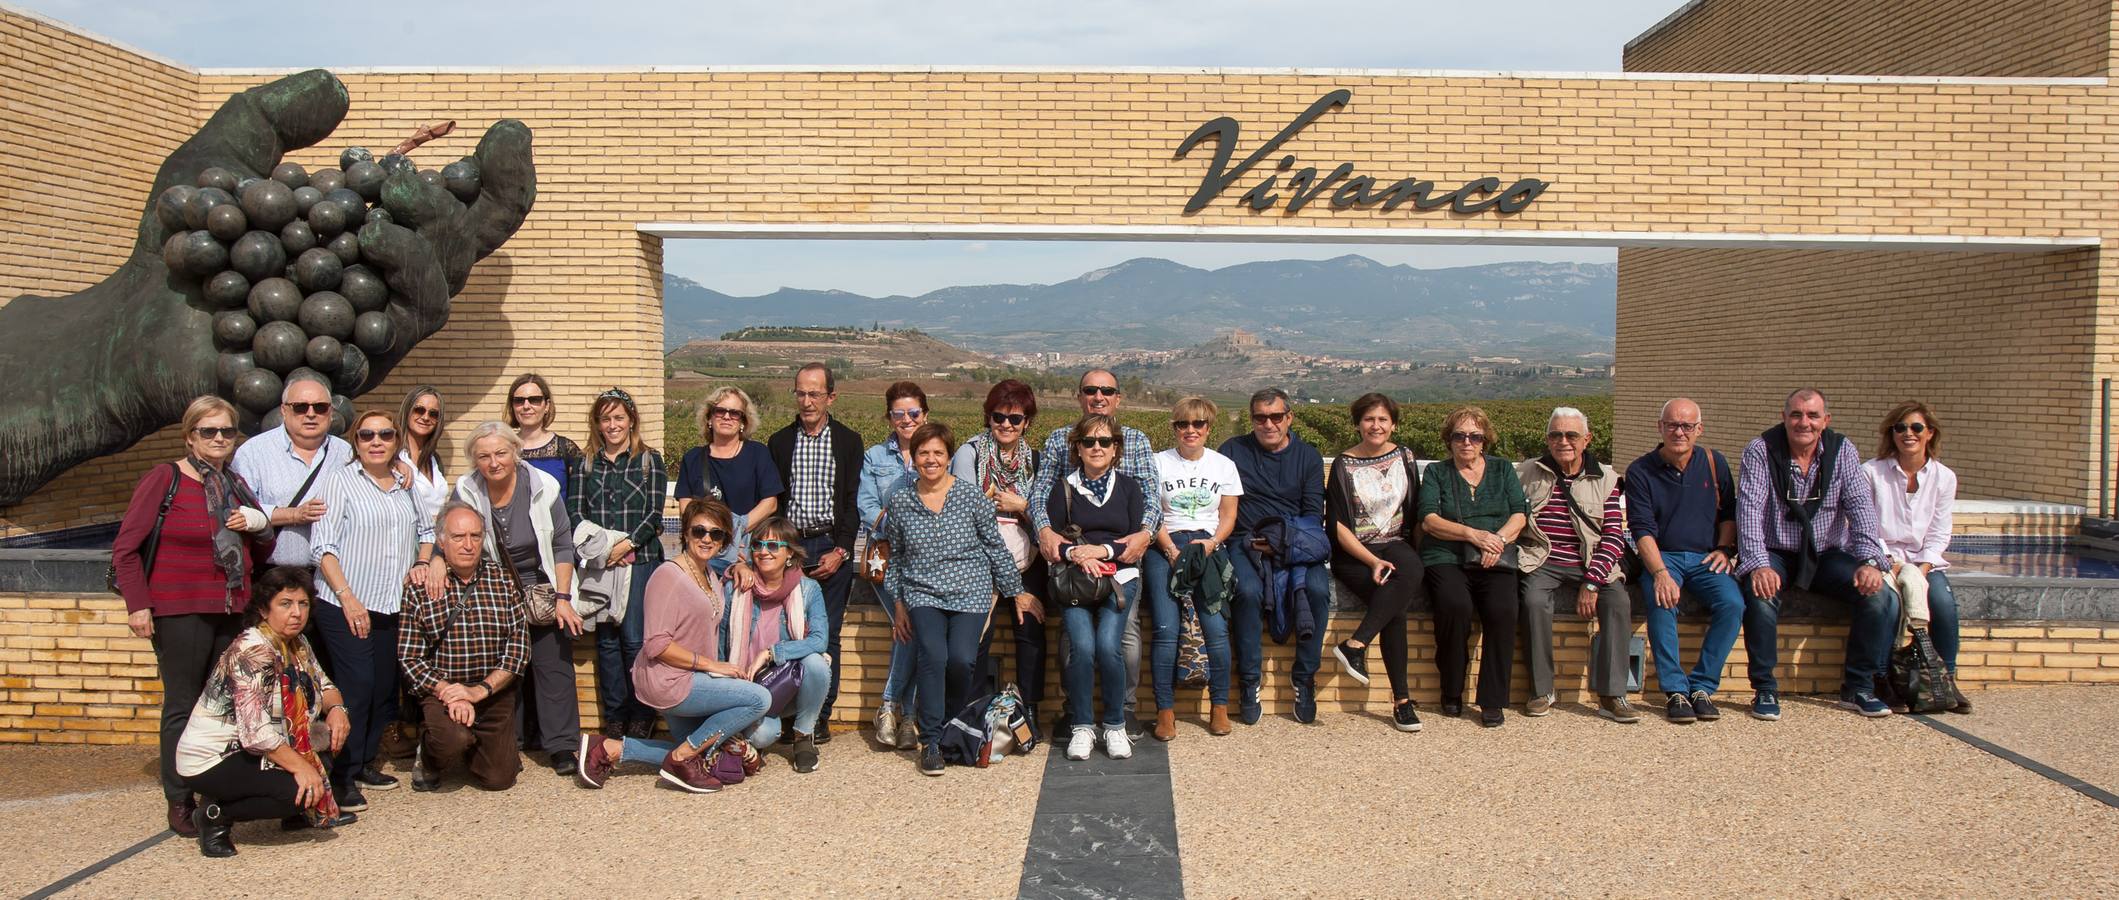 La Rioja Turismo estrena ruta enoturística inspirada en la novela de Andrés Pascual 'A merced de un dios salvaje'